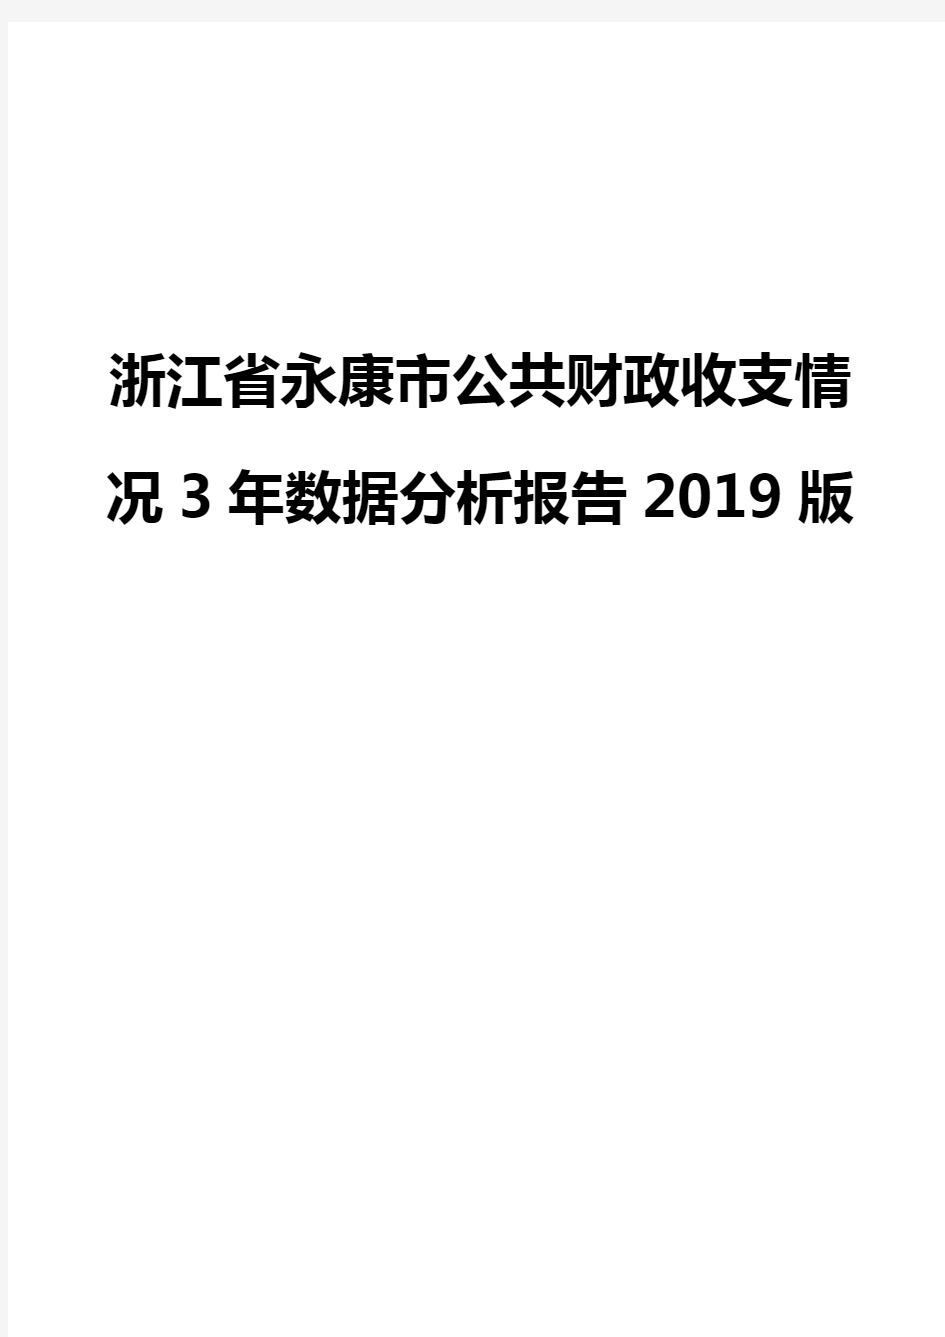 浙江省永康市公共财政收支情况3年数据分析报告2019版